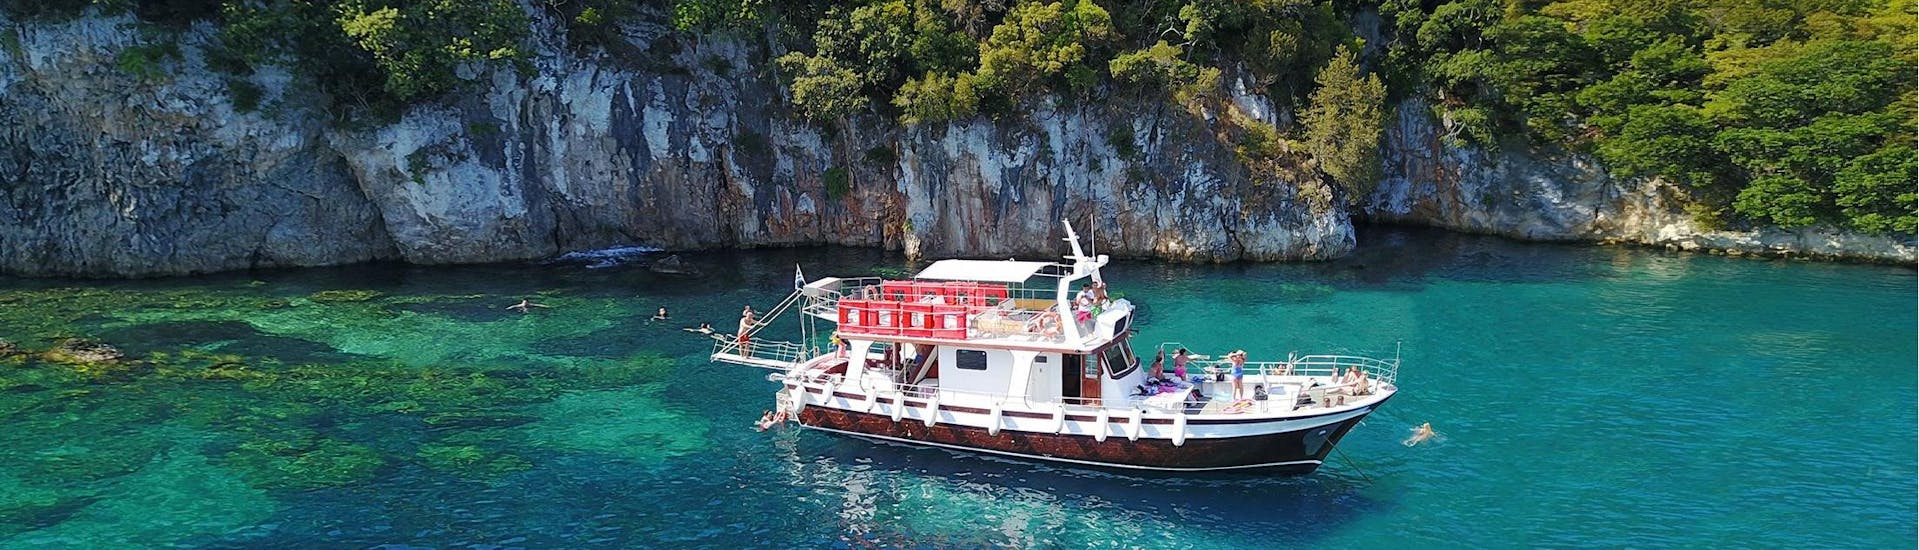 Das moderne Holz-Boot, das für die Bootstouren von Zephyros Milos verwendet wird, steht in einer Bucht mit kristallklarem Wasser in Milos.